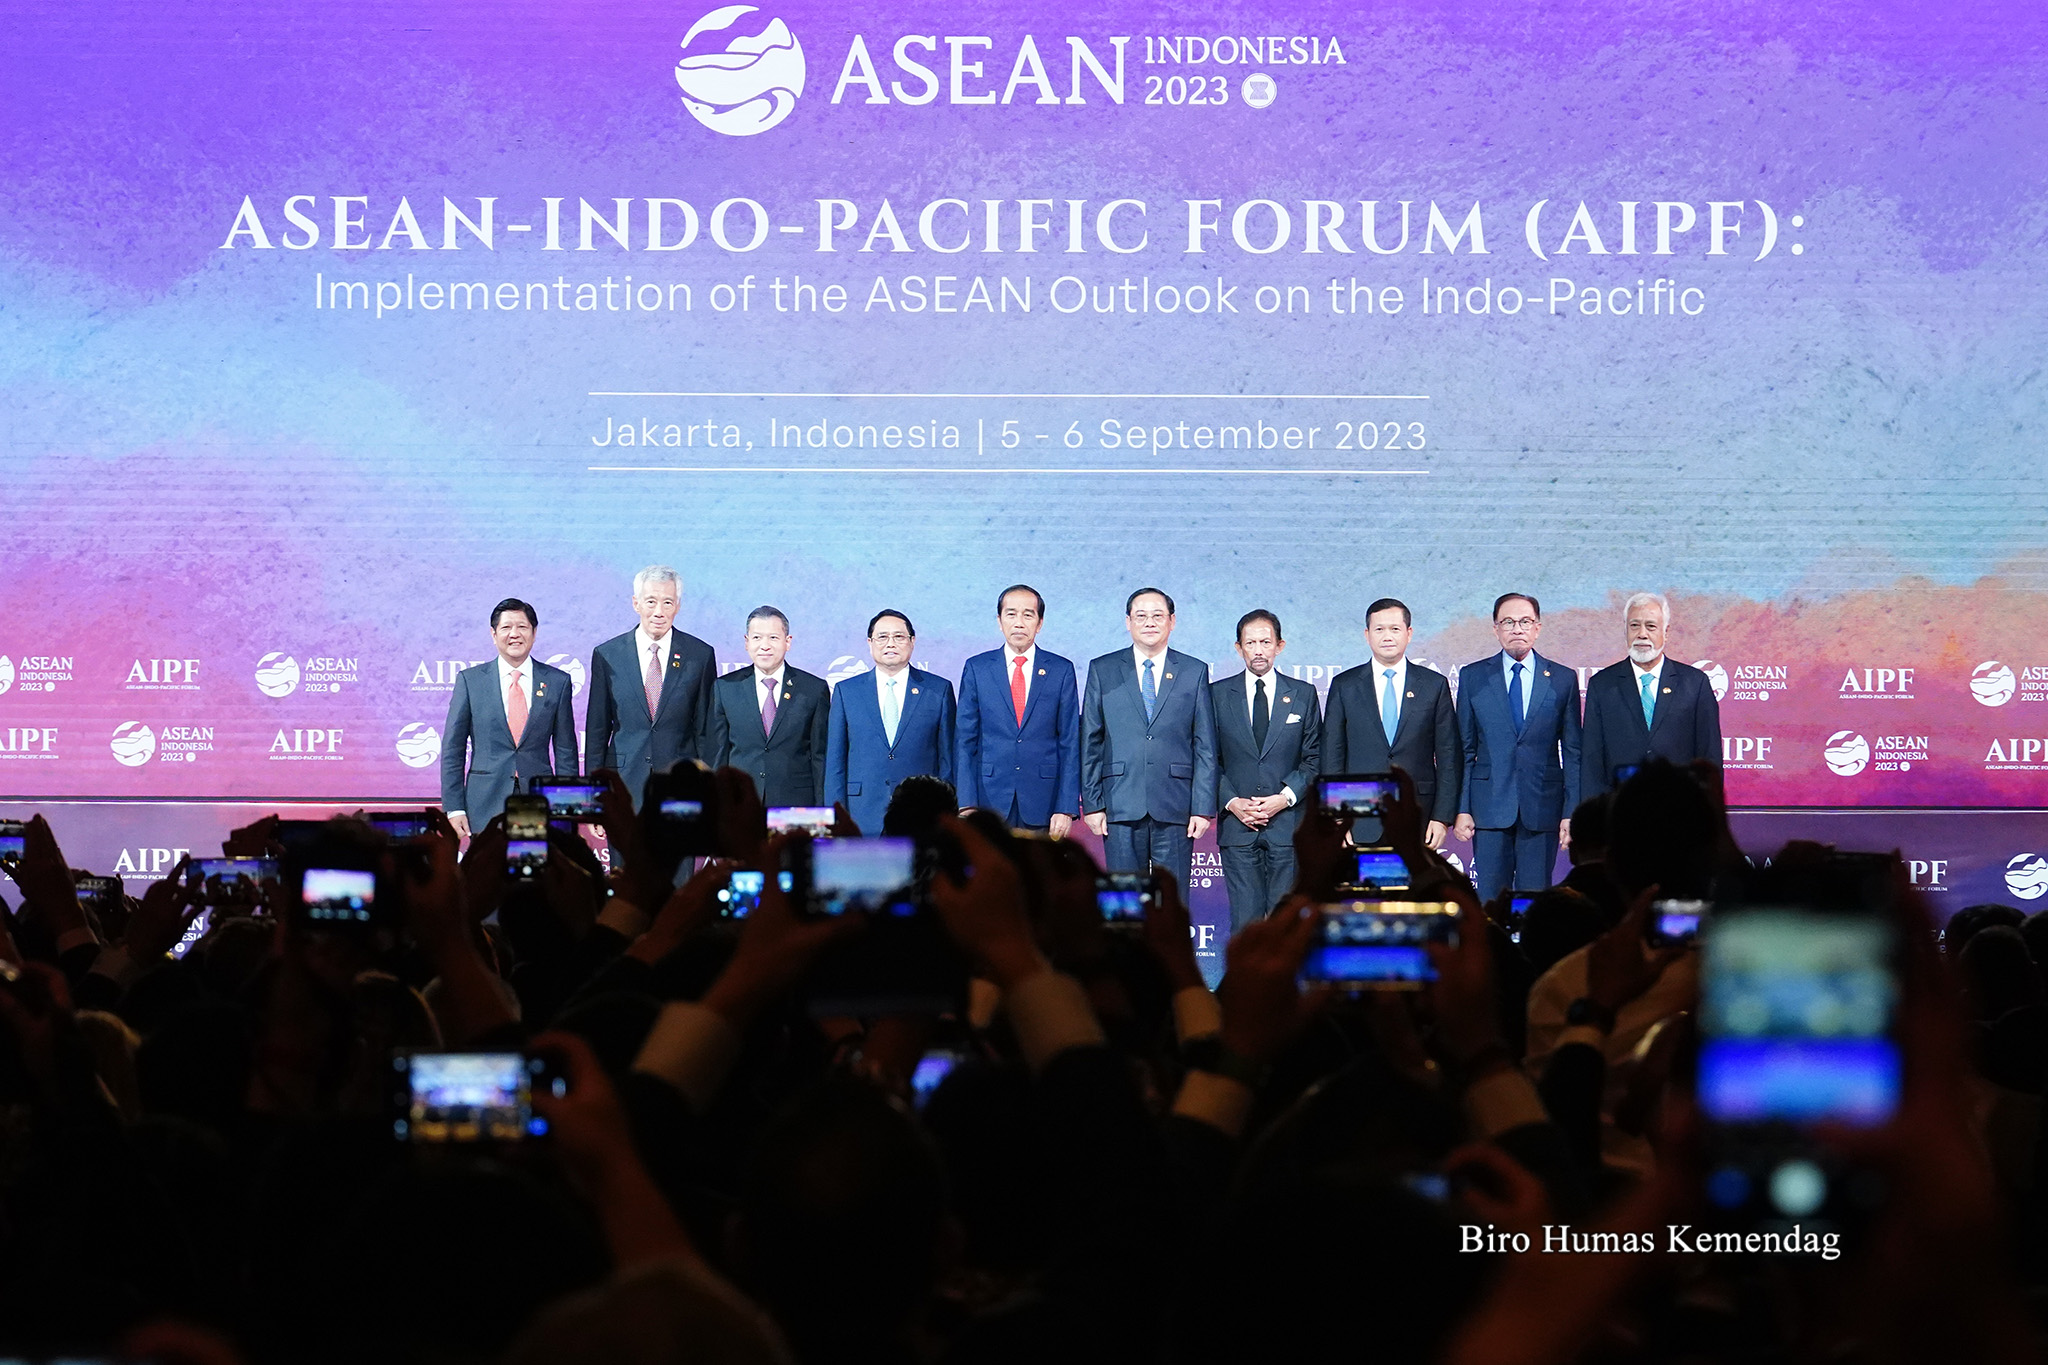 AIPF diselenggarakan sebagai implementasi konkret dari ASEAN Outlook on the Indo-Pacific (AOIP) yang diadopsi negara-negara anggota ASEAN pada 2019. AOIP adalah inisiatif yang bertujuan memperkuat arsitektur regional yang inklusif. AOIP juga dimaksudkan untuk mendorong kolaborasi ketimbang rivalitas, memperkuat kerja sama win-win dan menangkap peluang yang ada di kawasan Indo-Pasifik.